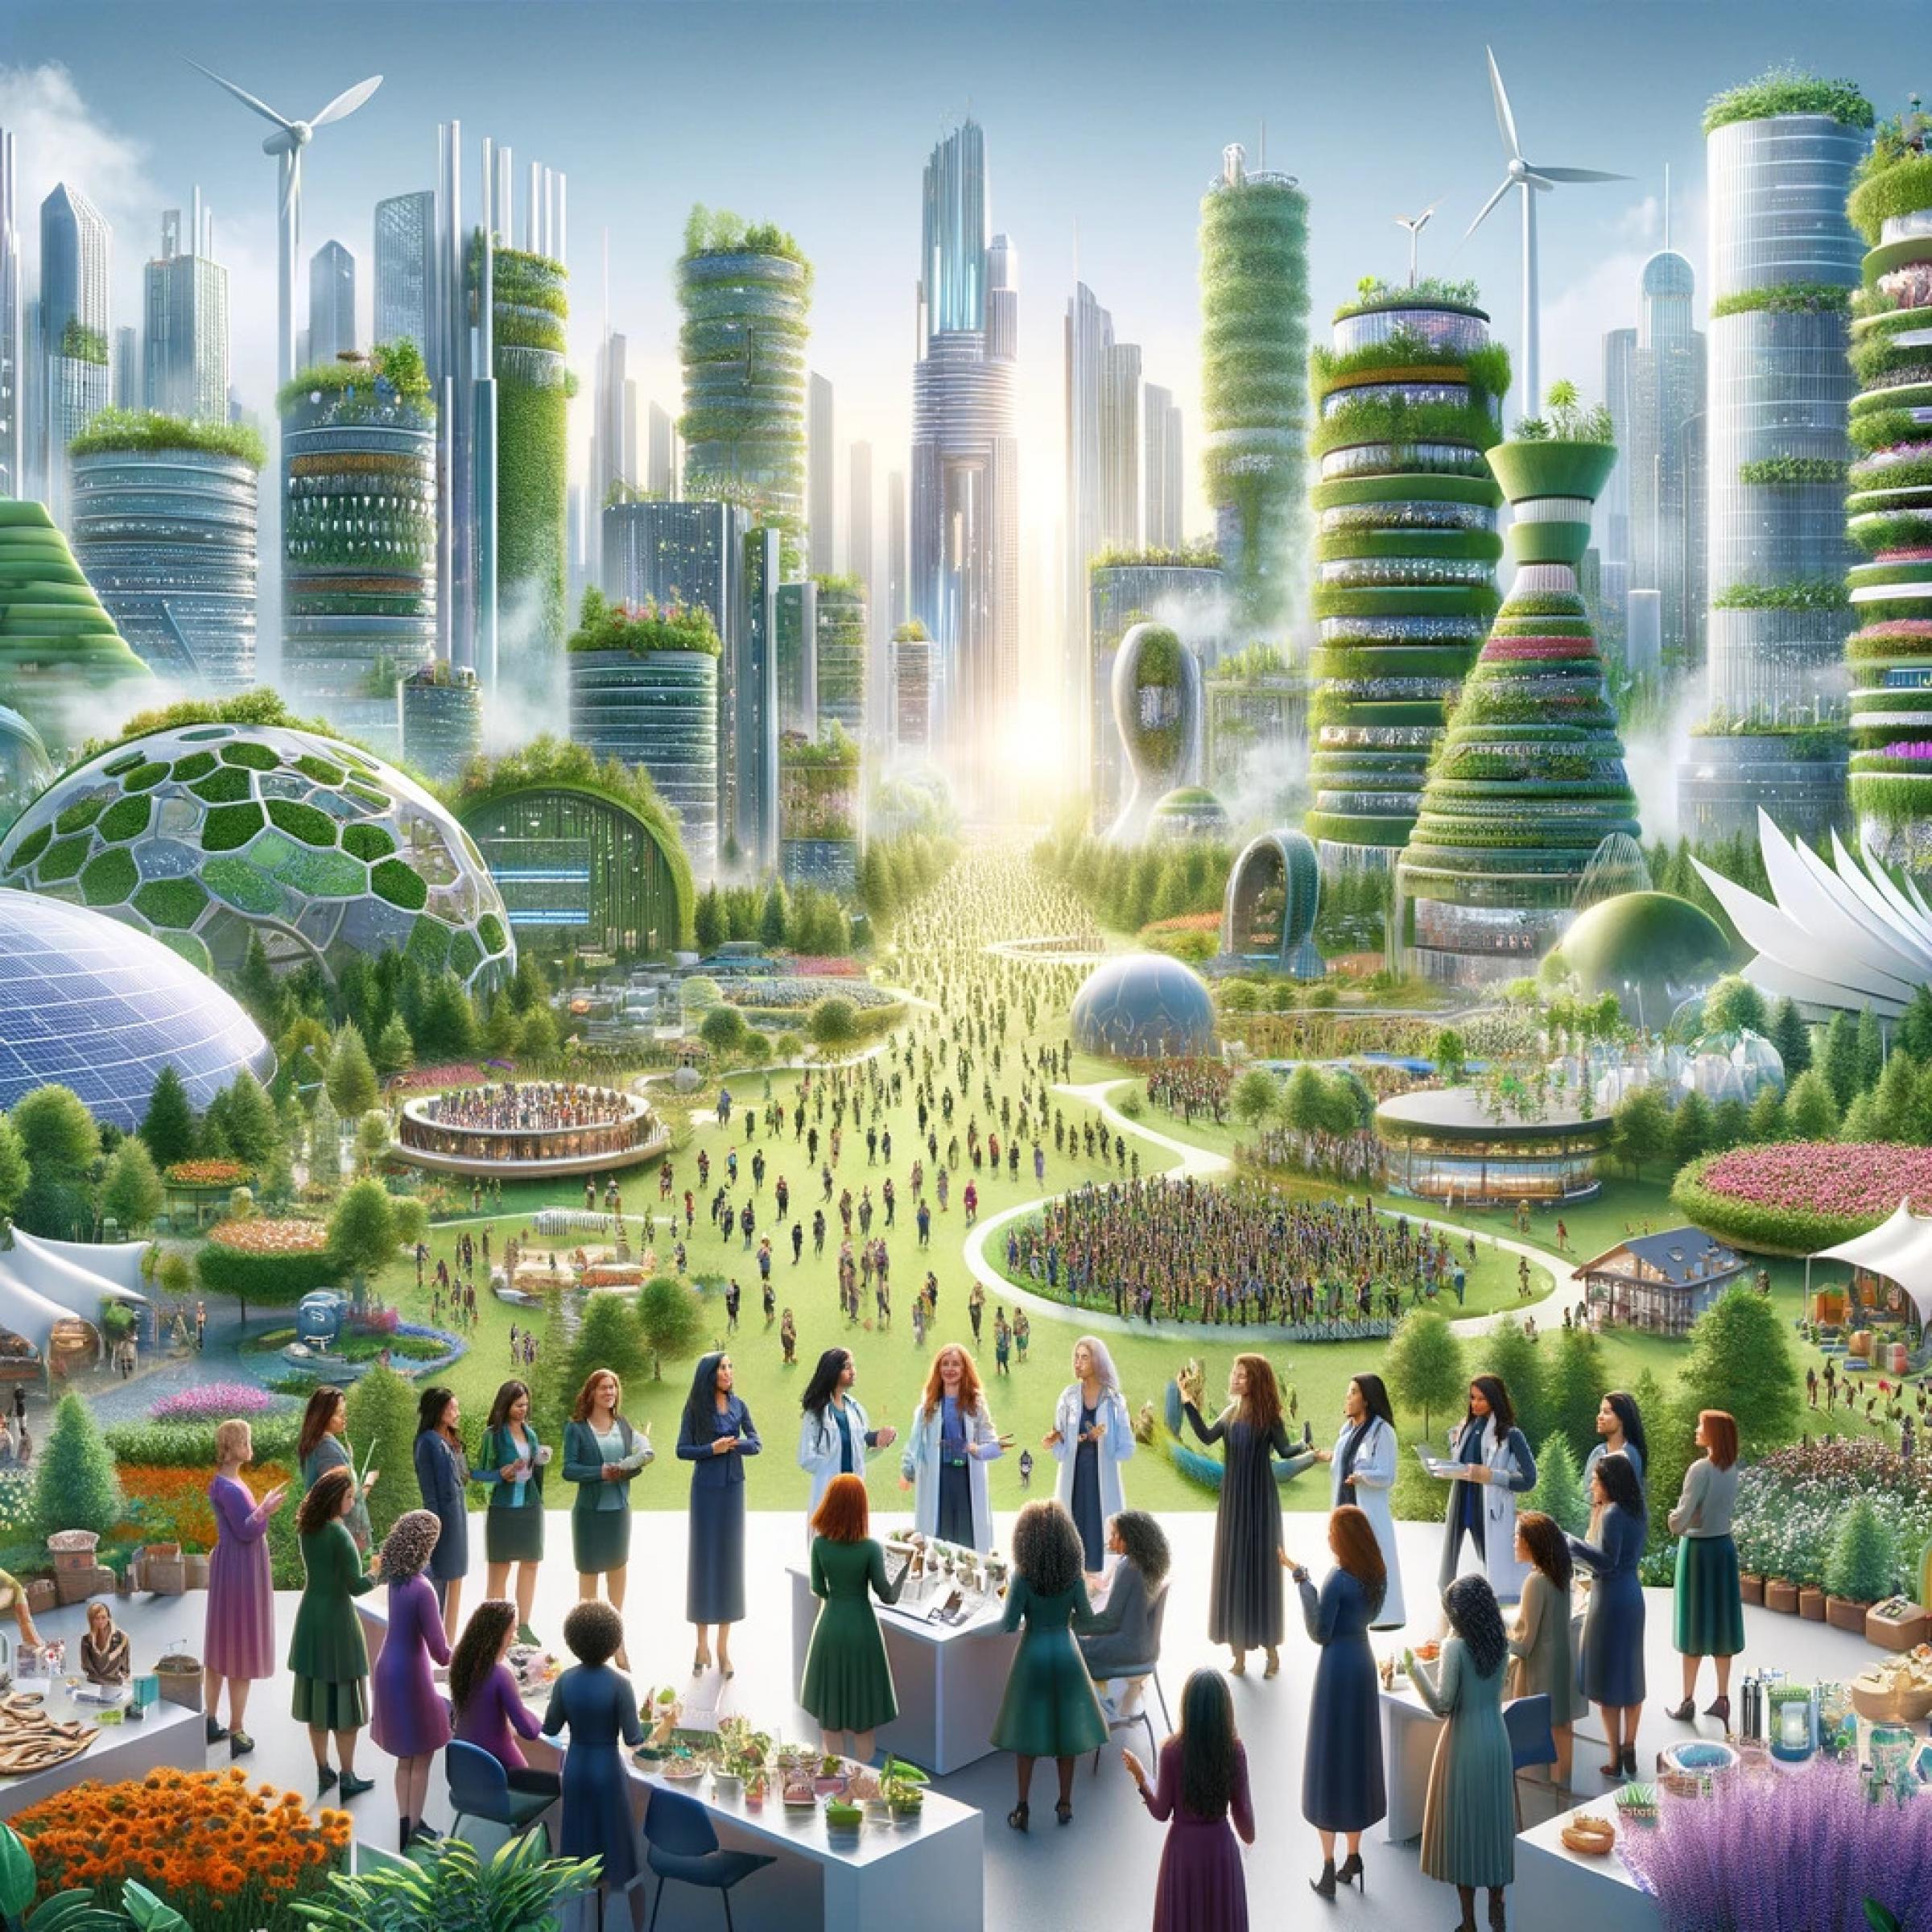 Man sieht ein von der KI erstelltes Bild. Im Vordergrund steht eine Gruppe von Frauen, im Hintergrund sieht man futuristische Häuser mit vertikalen Gärten, Windräder, Solarzellen